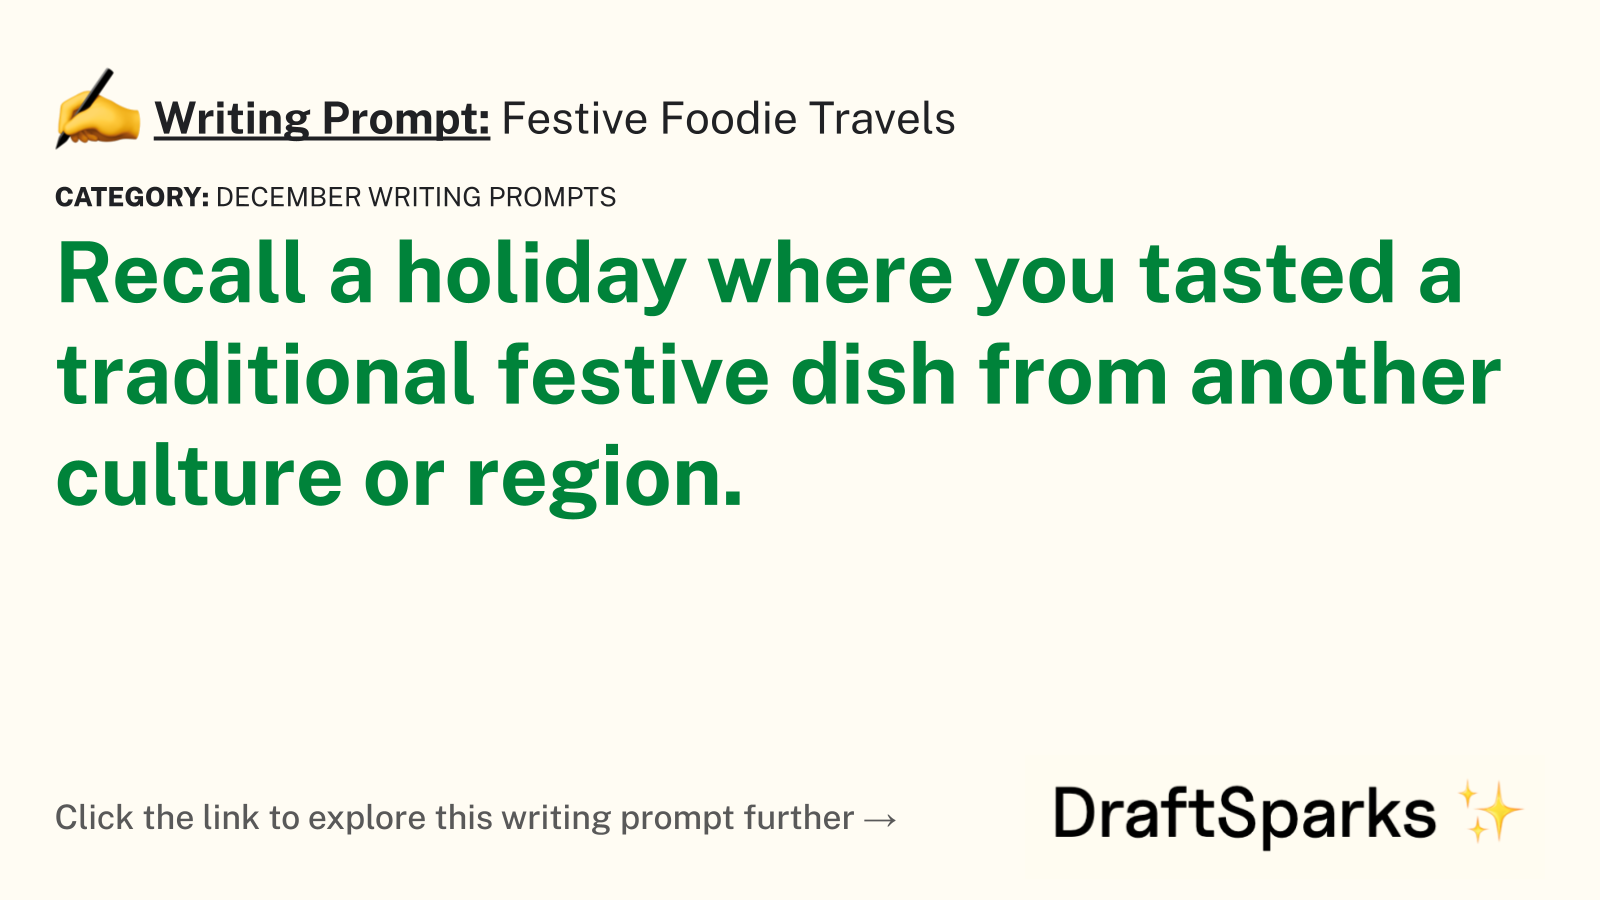 Festive Foodie Travels